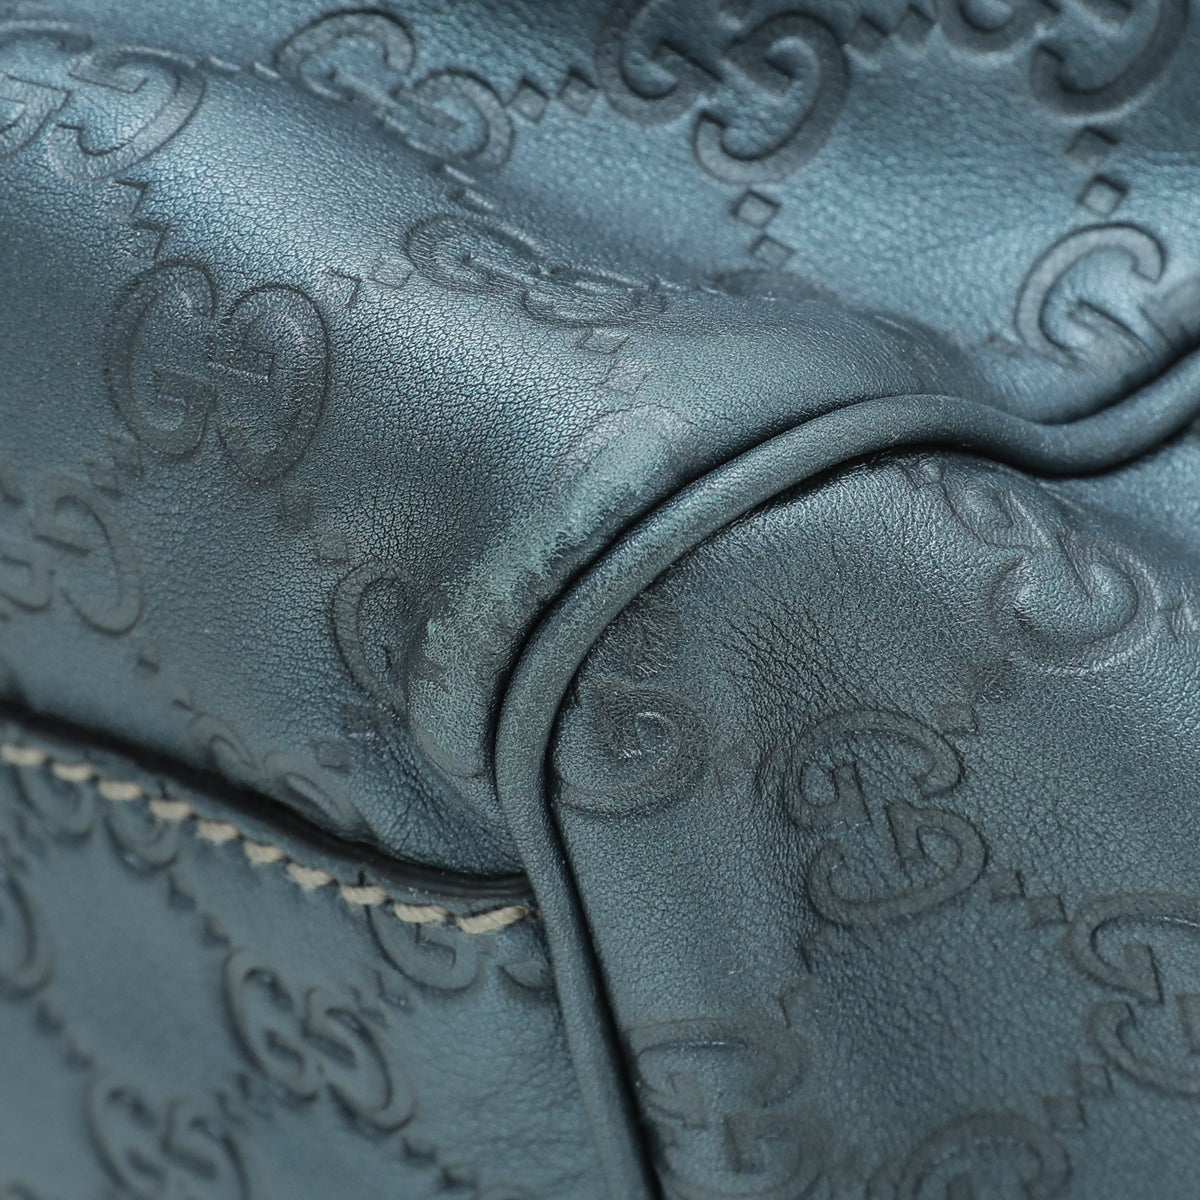 Gucci Metallic Slate Blue Guccissima Sukey Tote Medium Bag